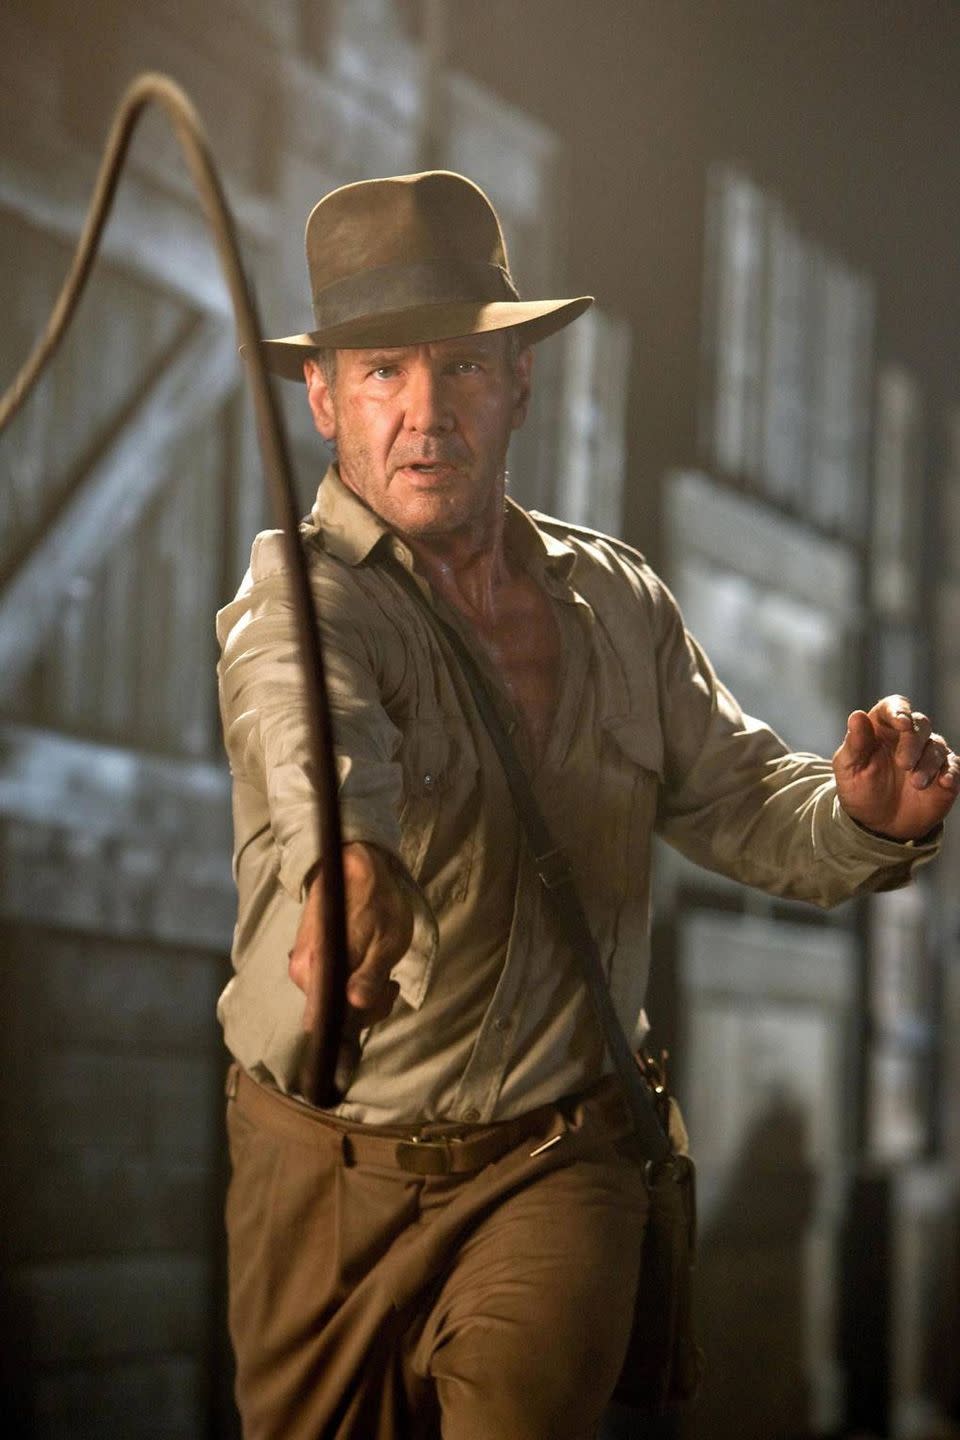 25. Indiana Jones: The <i>Indiana Jones</i> Franchise